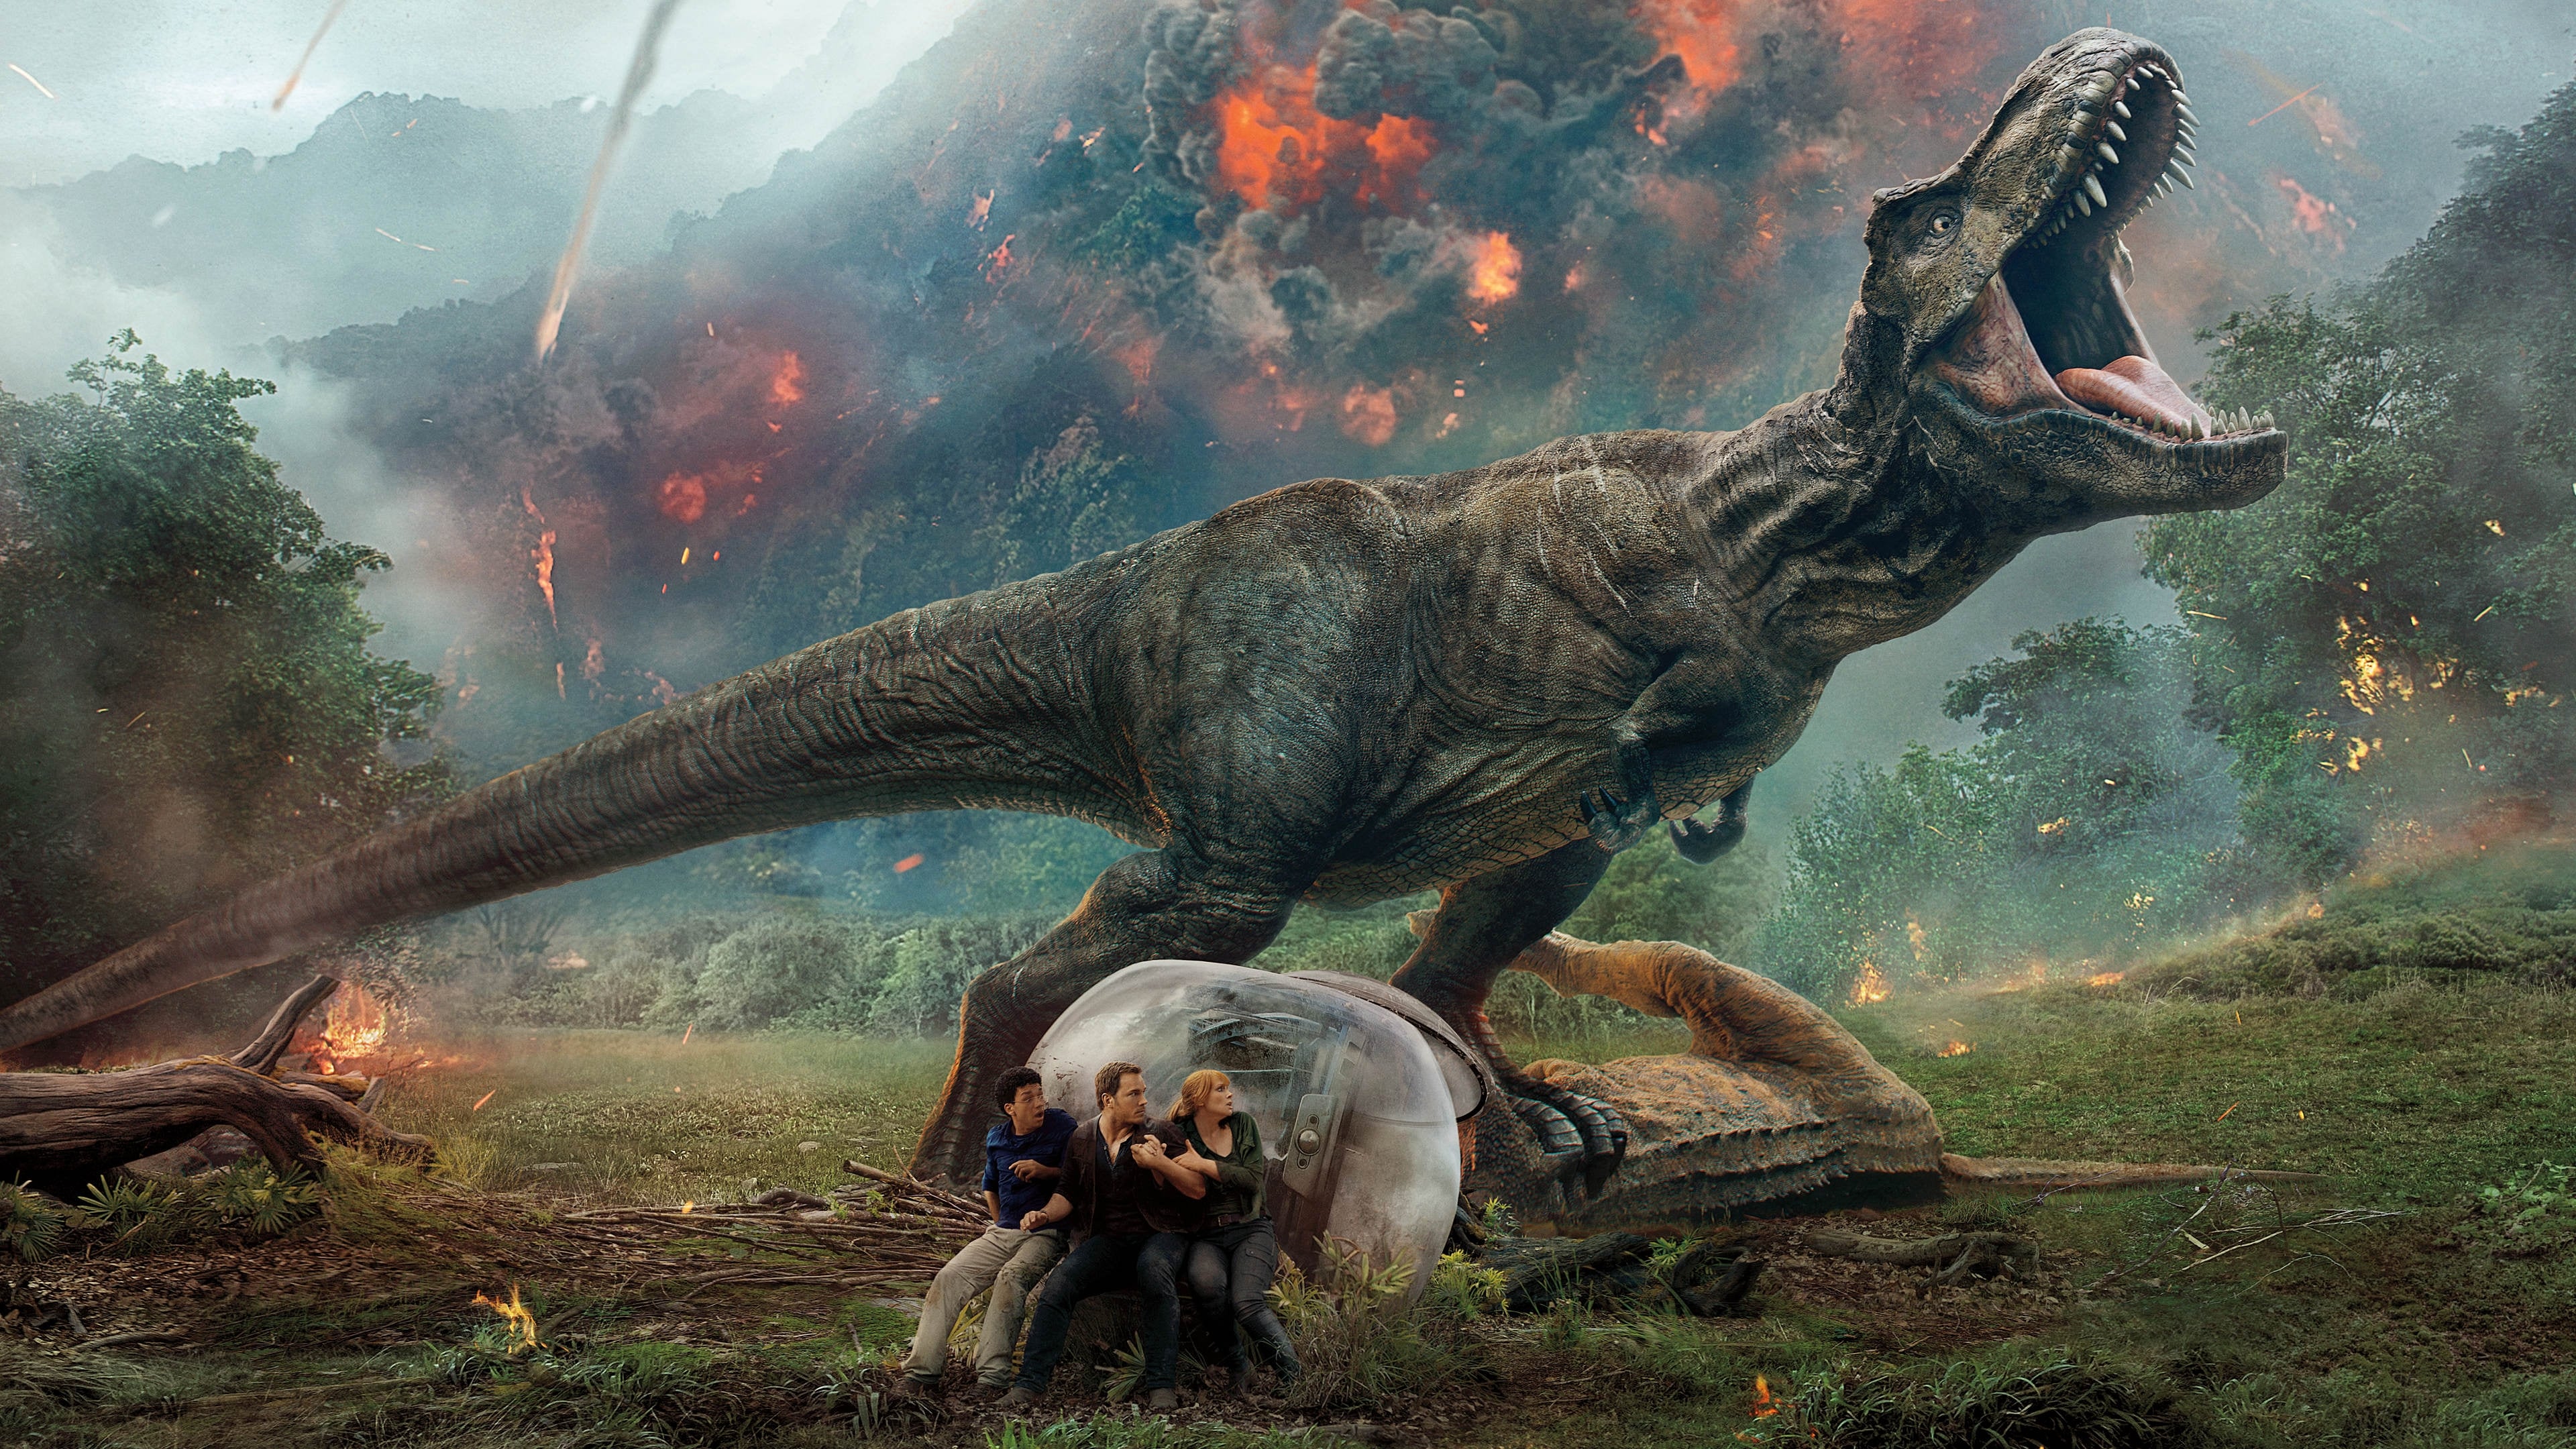 Xem Phim Thế Giới Khủng Long: Vương Quốc Sụp Đổ (Jurassic World: Fallen Kingdom)